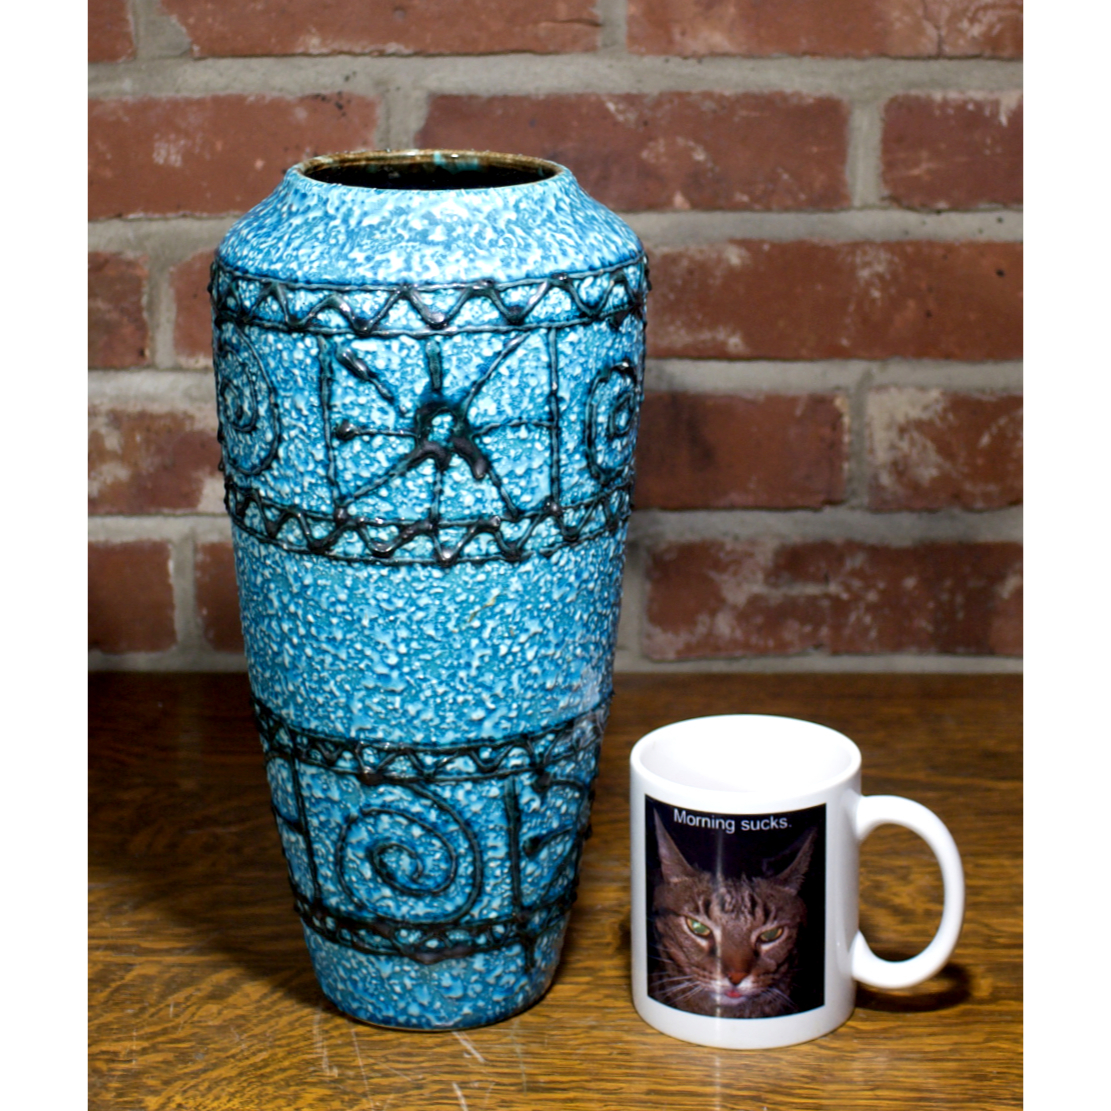 Bay keramik vase 508, view one